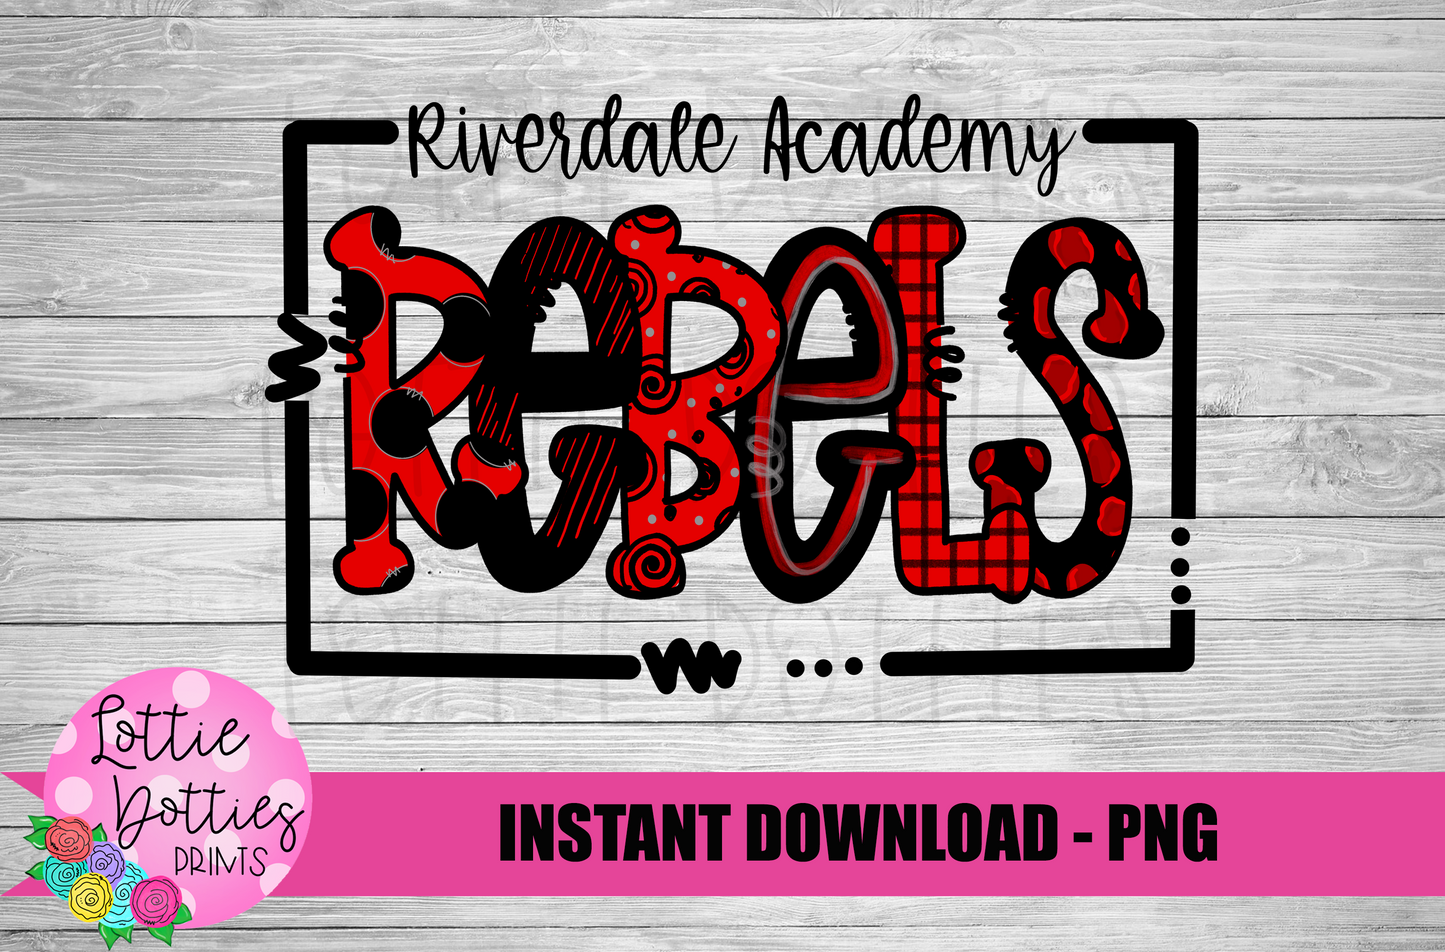 Riverdale Academy Rebels PNG - Rebels PNG - Instant Download - Digital Download - Rebels Sublimation Design